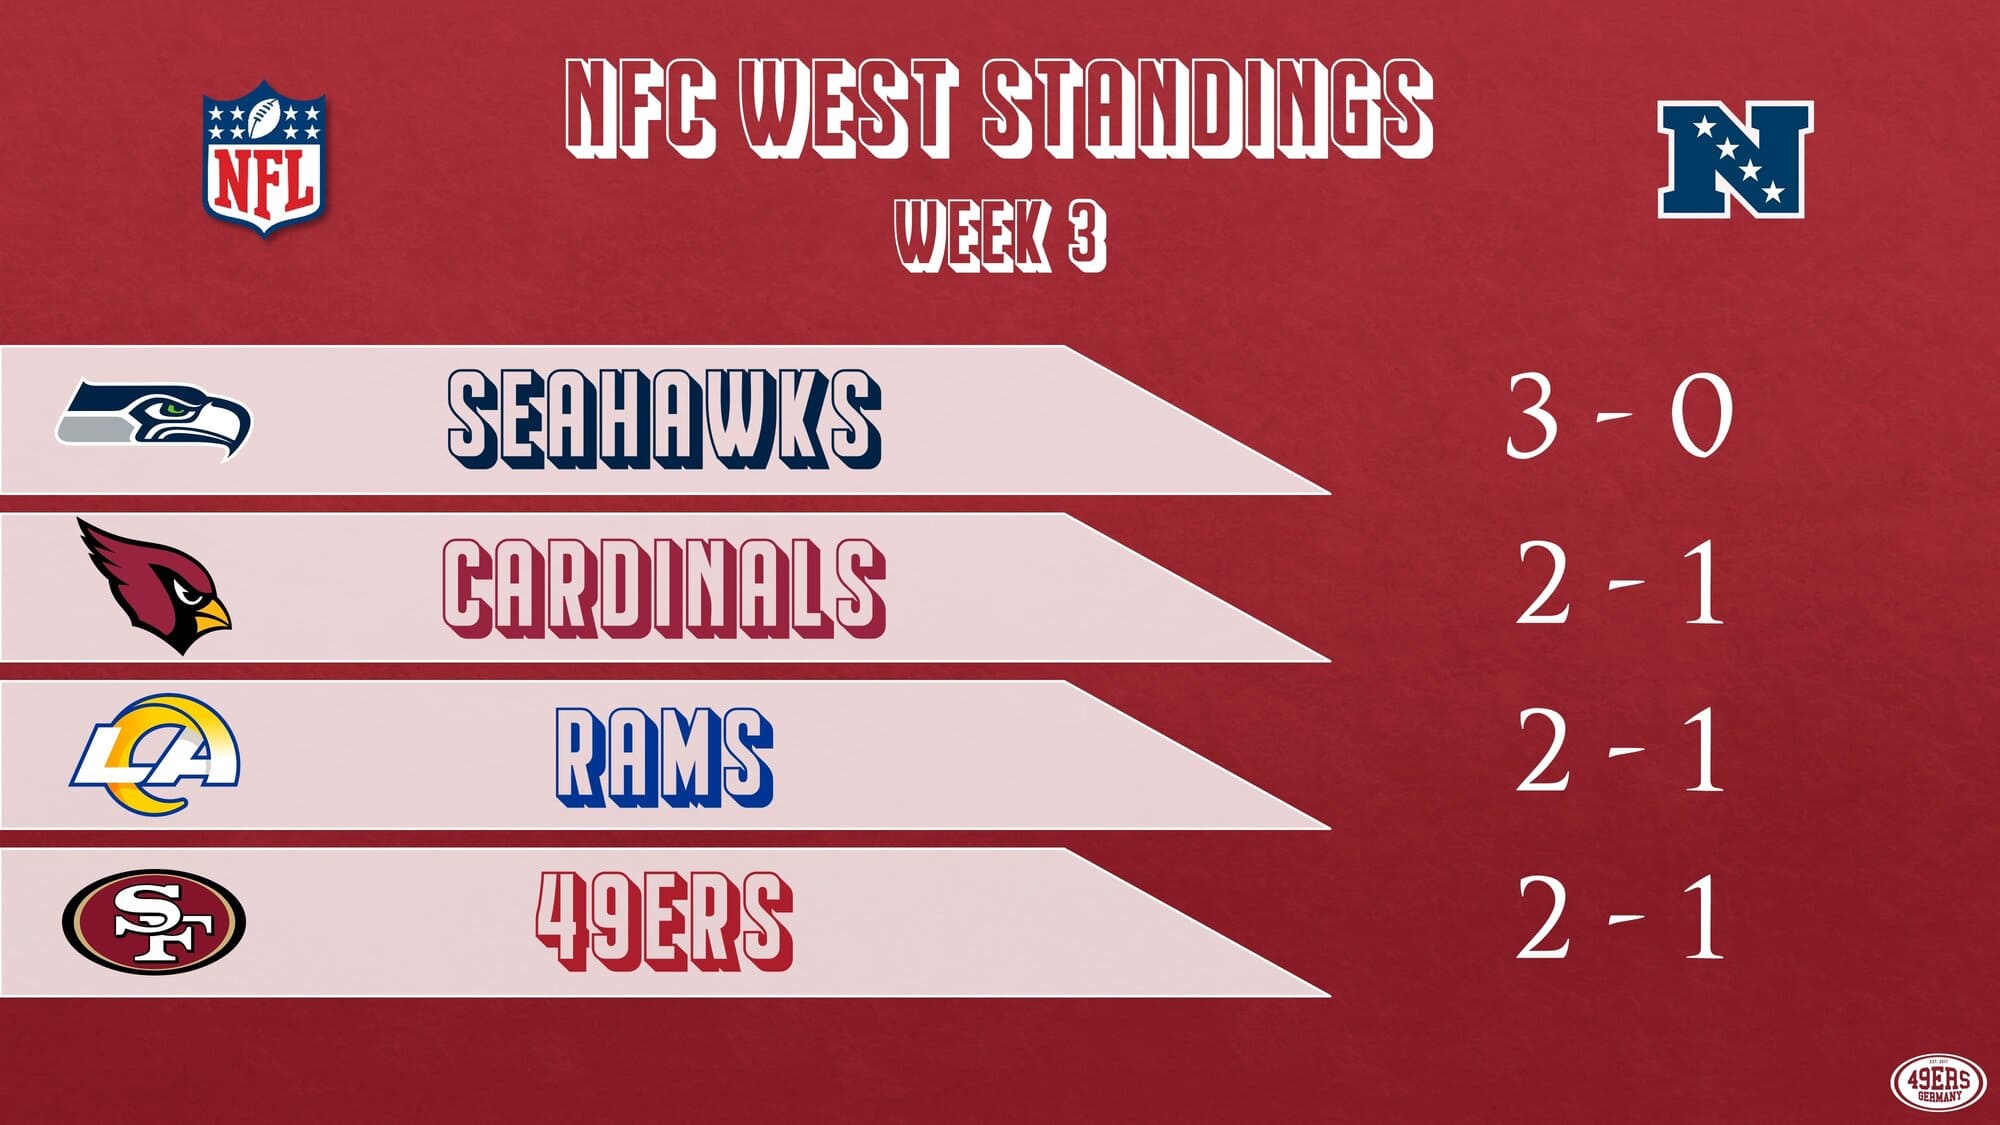 NFC West Standings vor Week 4 - 49ers Germany